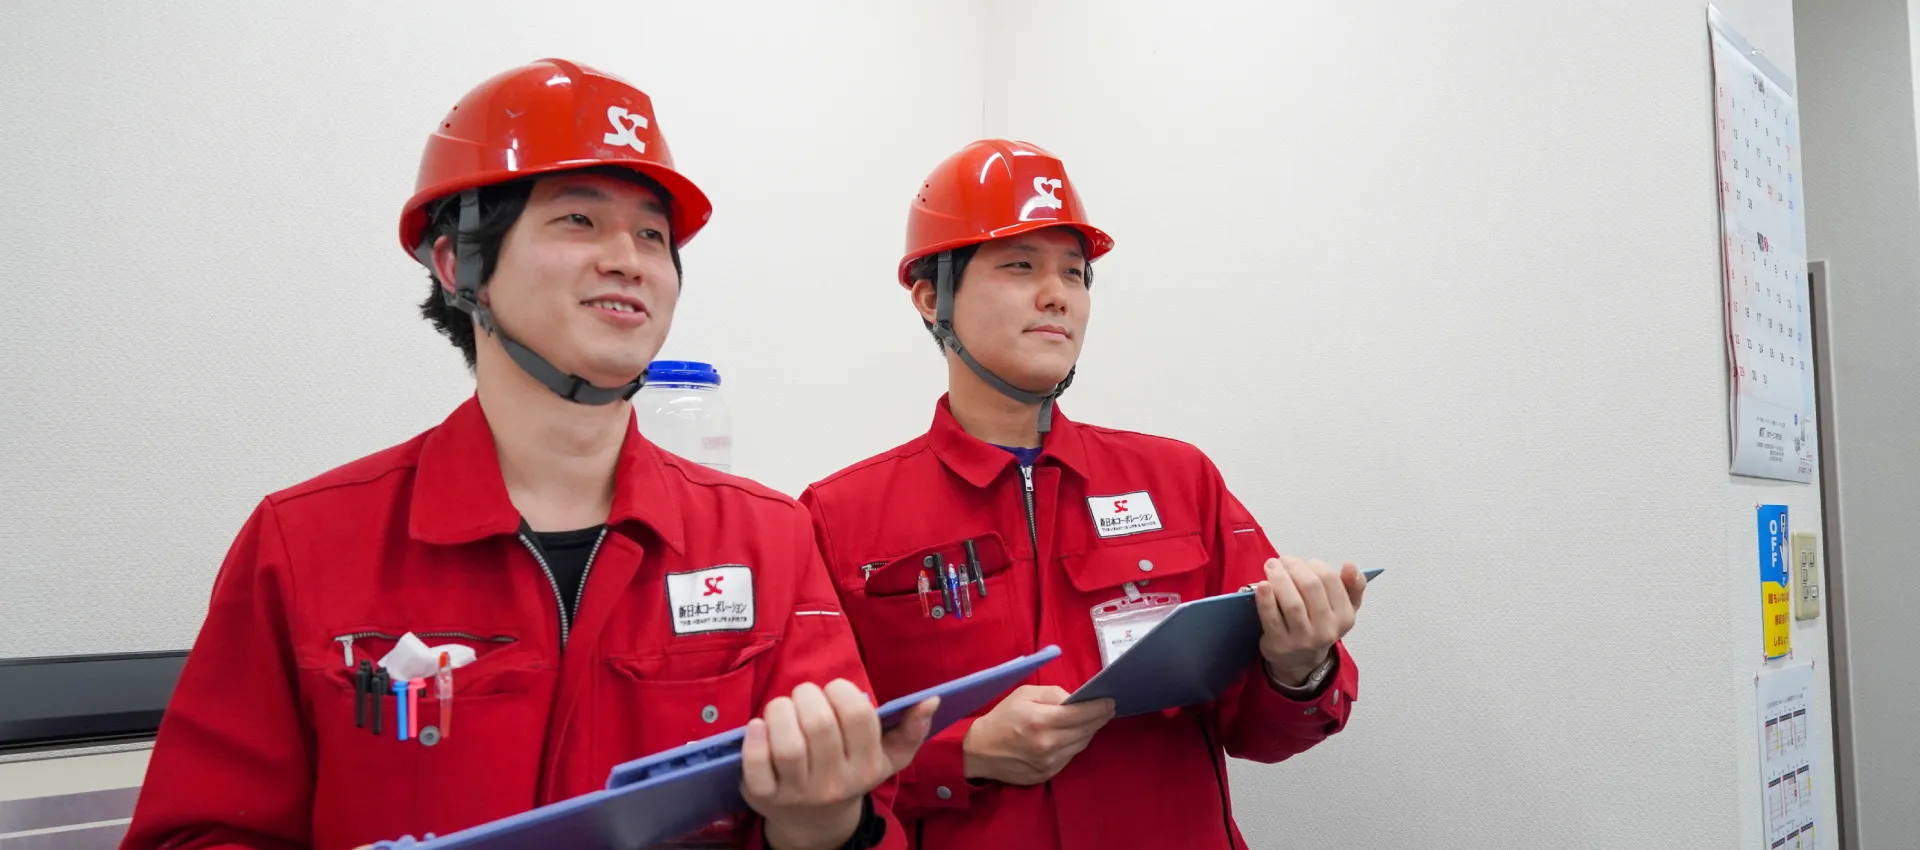 新日本コーポレーションの赤い作業着・ヘルメットを被った男性2人がバインダーをもって調査している写真